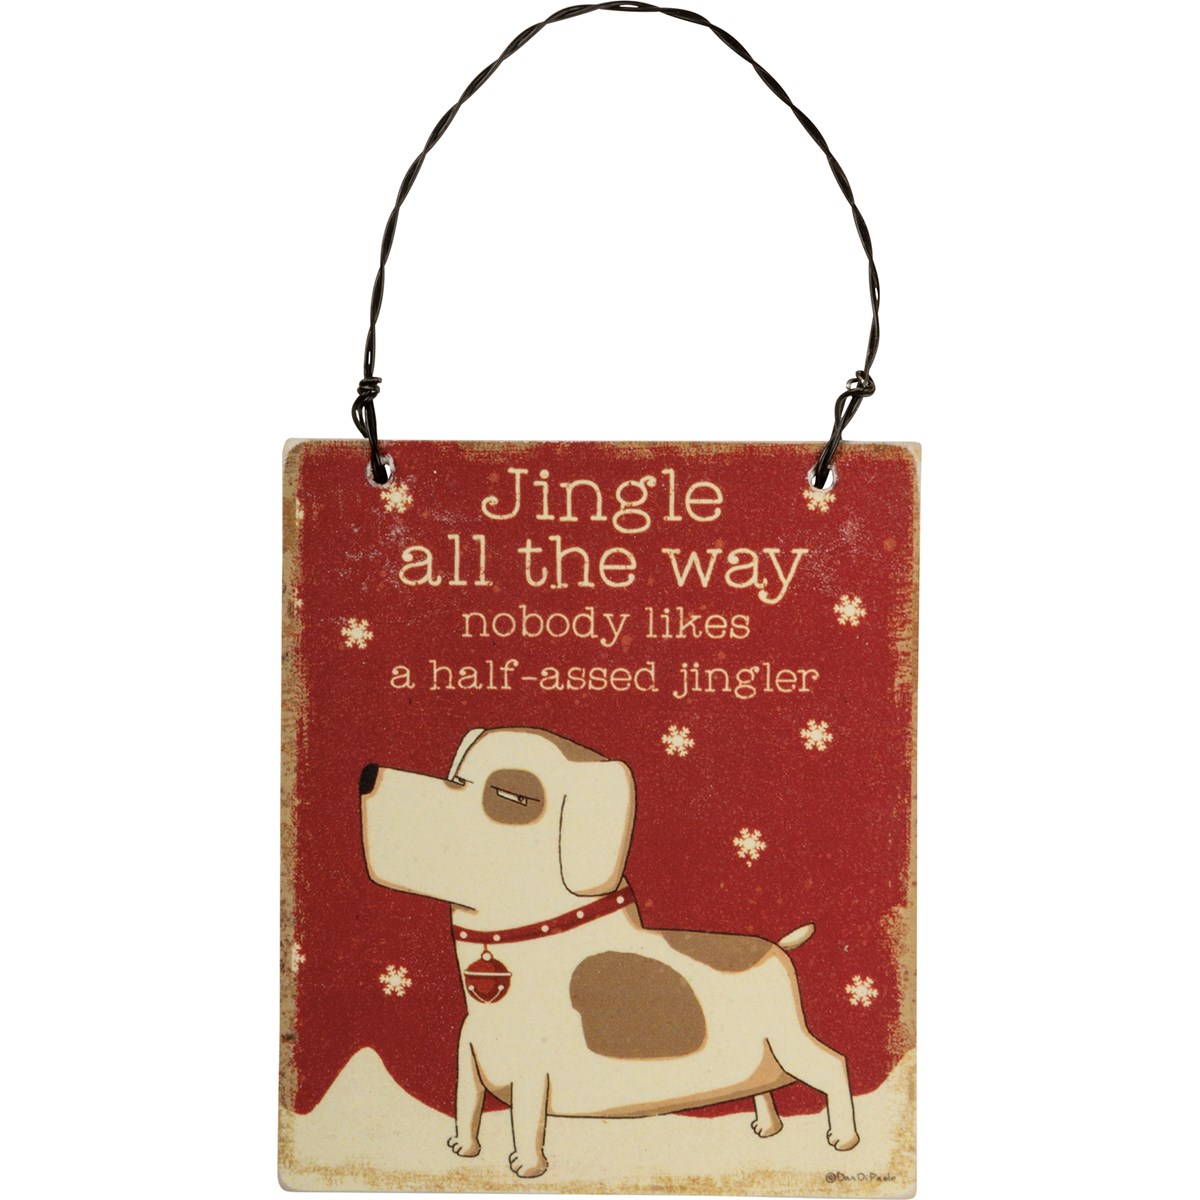 Ornament Set - Sassy Dogs - 3.50" x 3" x 0.25", 3" x 3.50" x 0.25", 3" x 3" x 0.25" - Wood, Paper, Wire